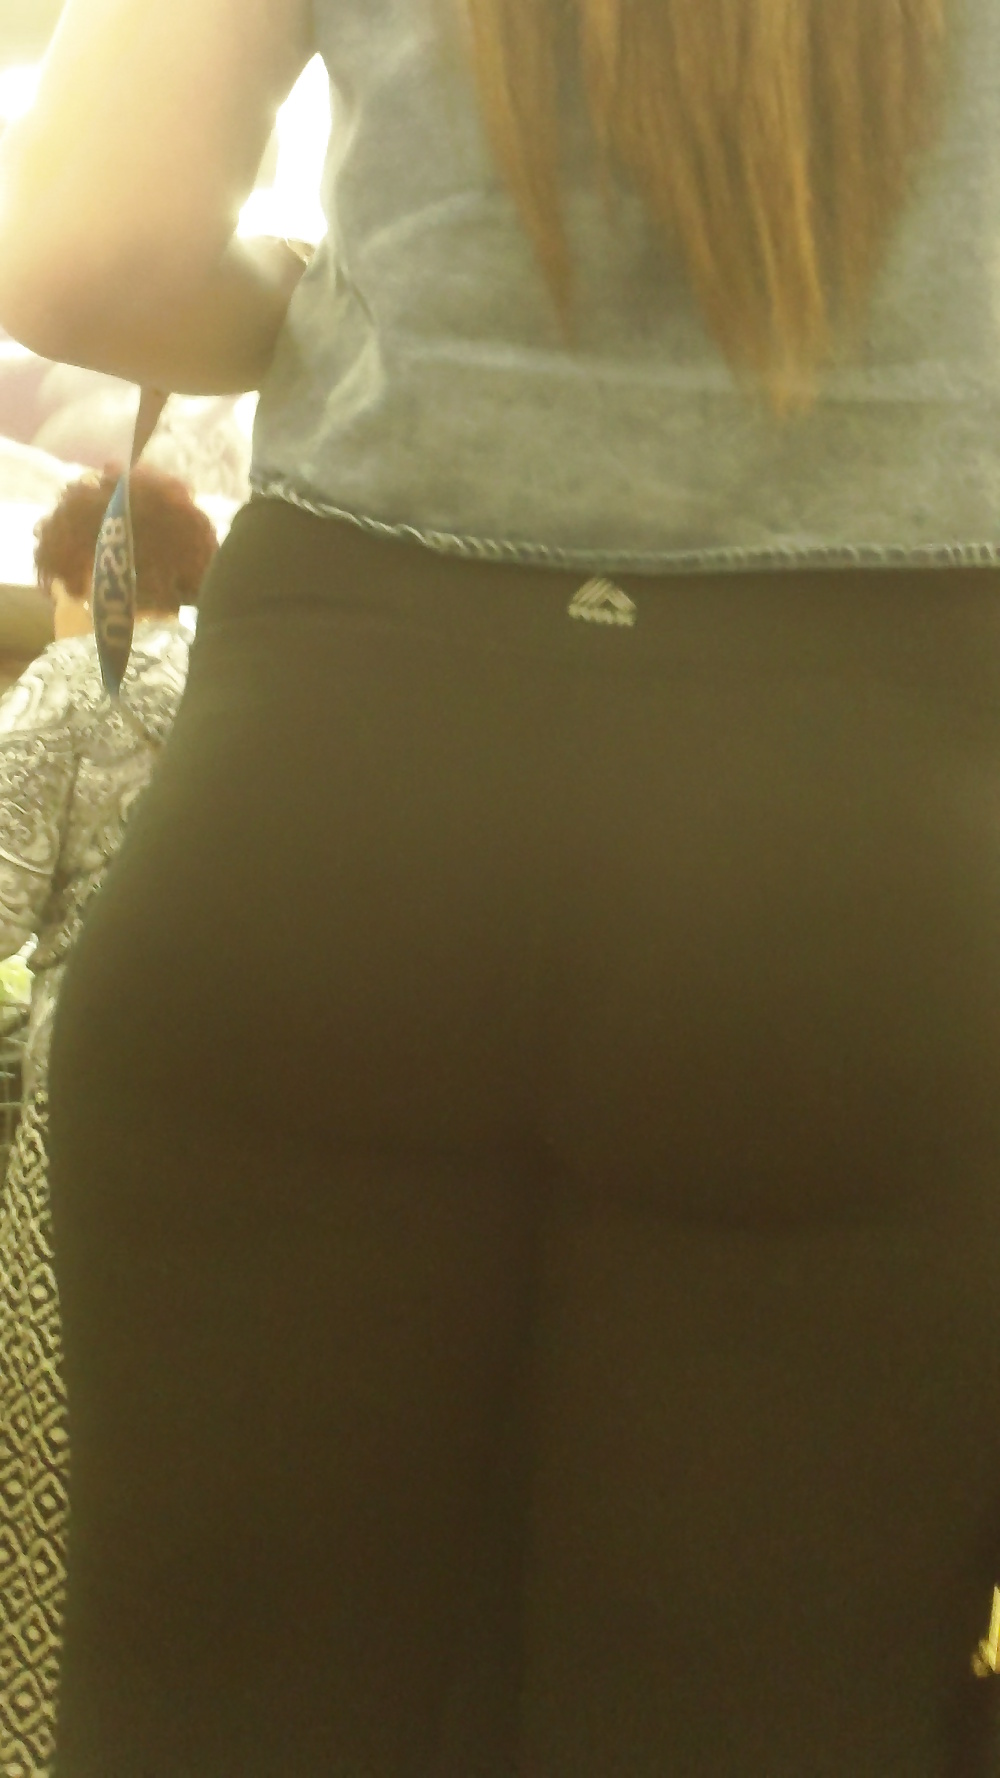 Popular teen girls ass & butt in jeans Part 6 #32009742